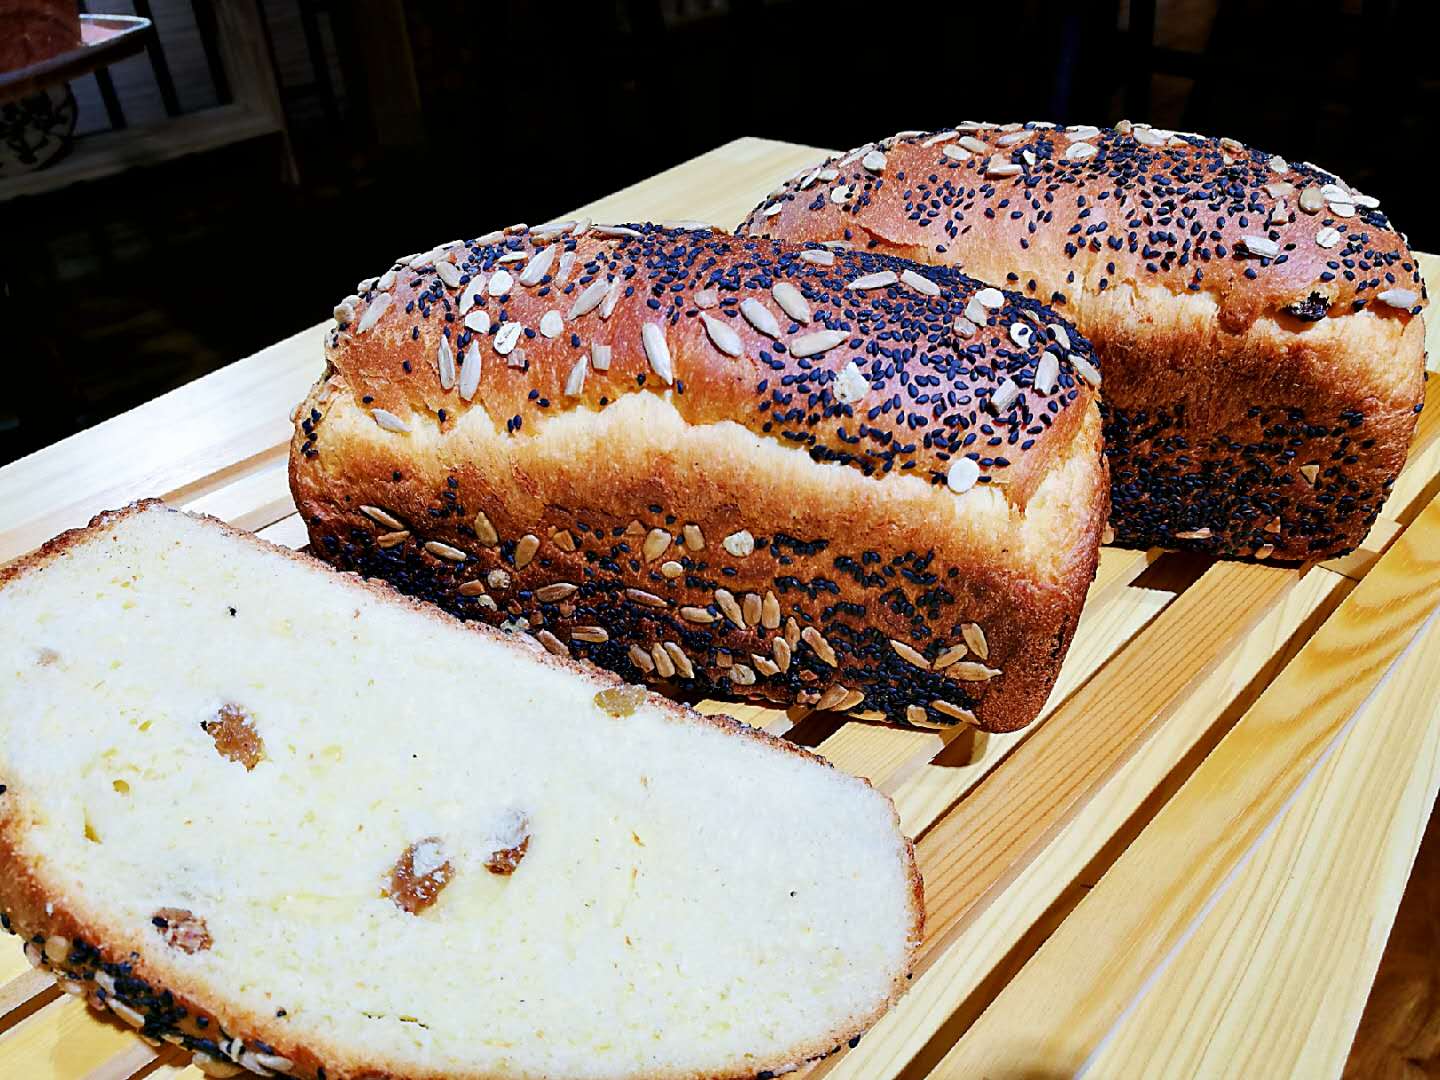 黑列巴 - 俄式面包 - 满洲利亚俄罗斯食品加工有限公司官网-纯正俄罗斯提拉米苏|香肠|列巴|特色俄罗斯食品